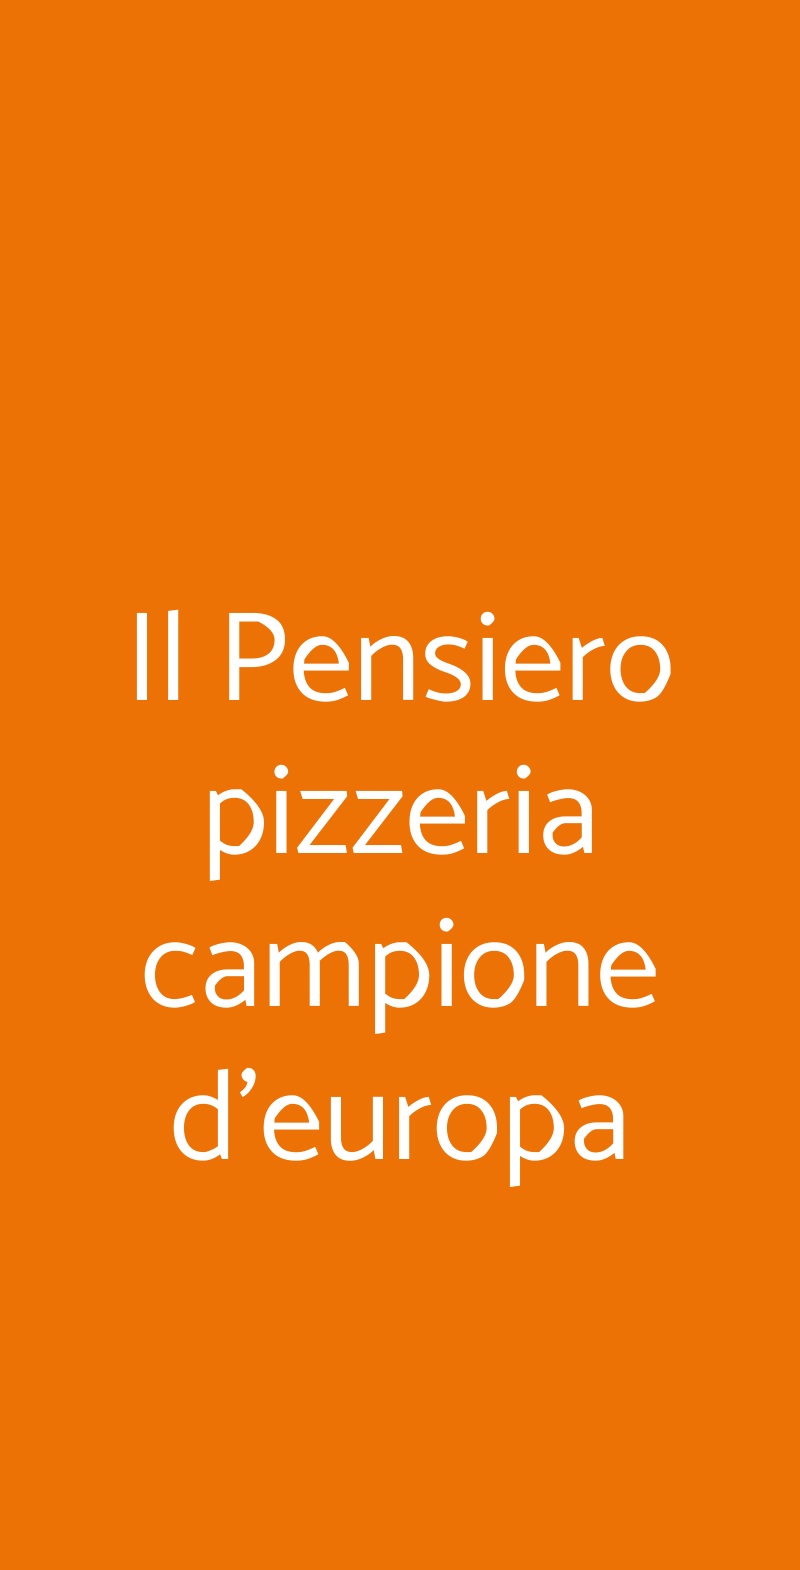 Il Pensiero pizzeria campione d'europa Torino menù 1 pagina